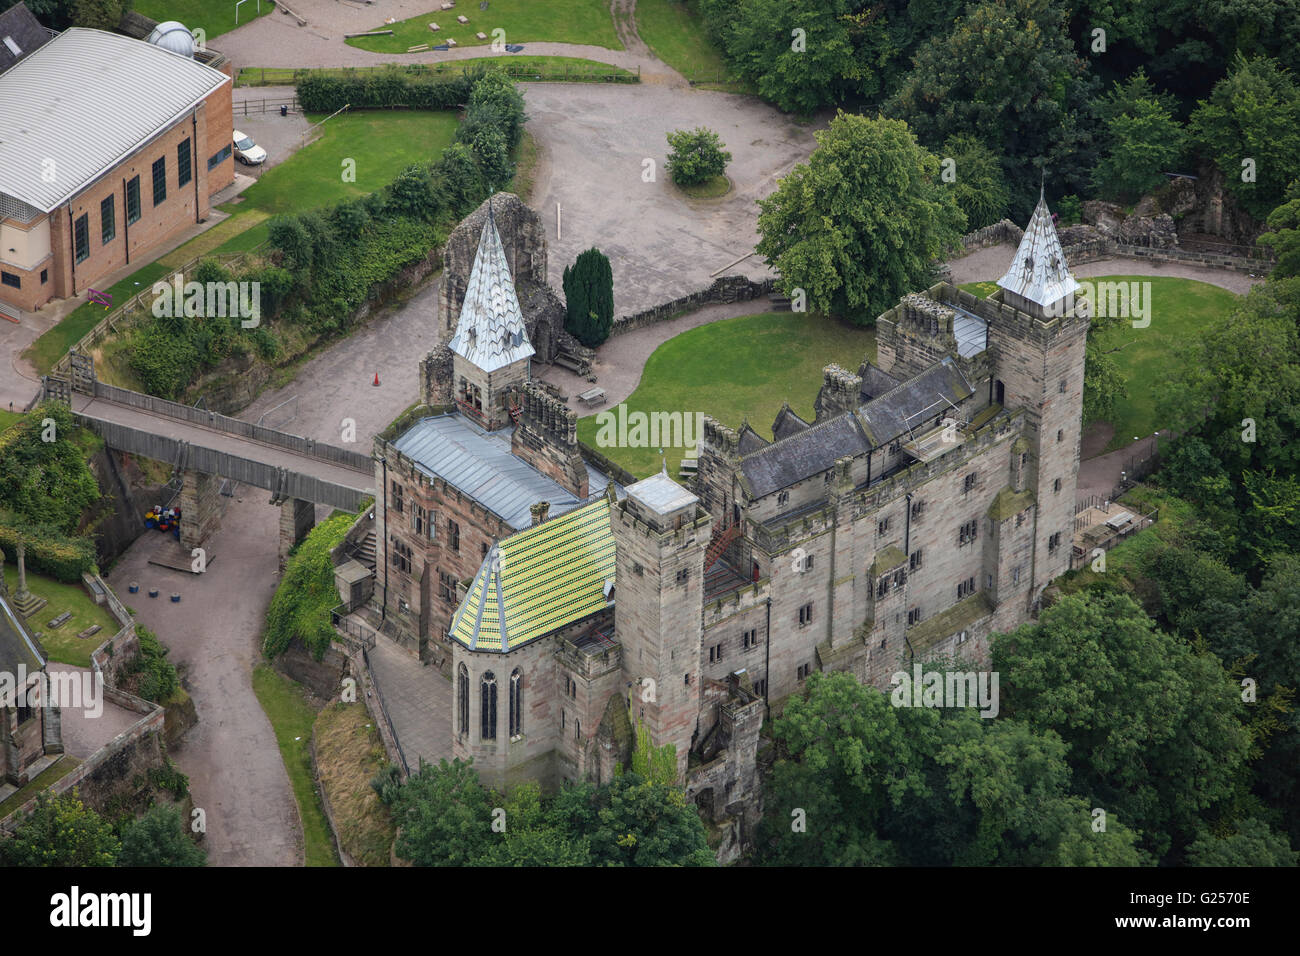 Eine Luftaufnahme des Alton Castle in Staffordshire, jetzt als ein Wohn Jugendzentrum genutzt Stockfoto